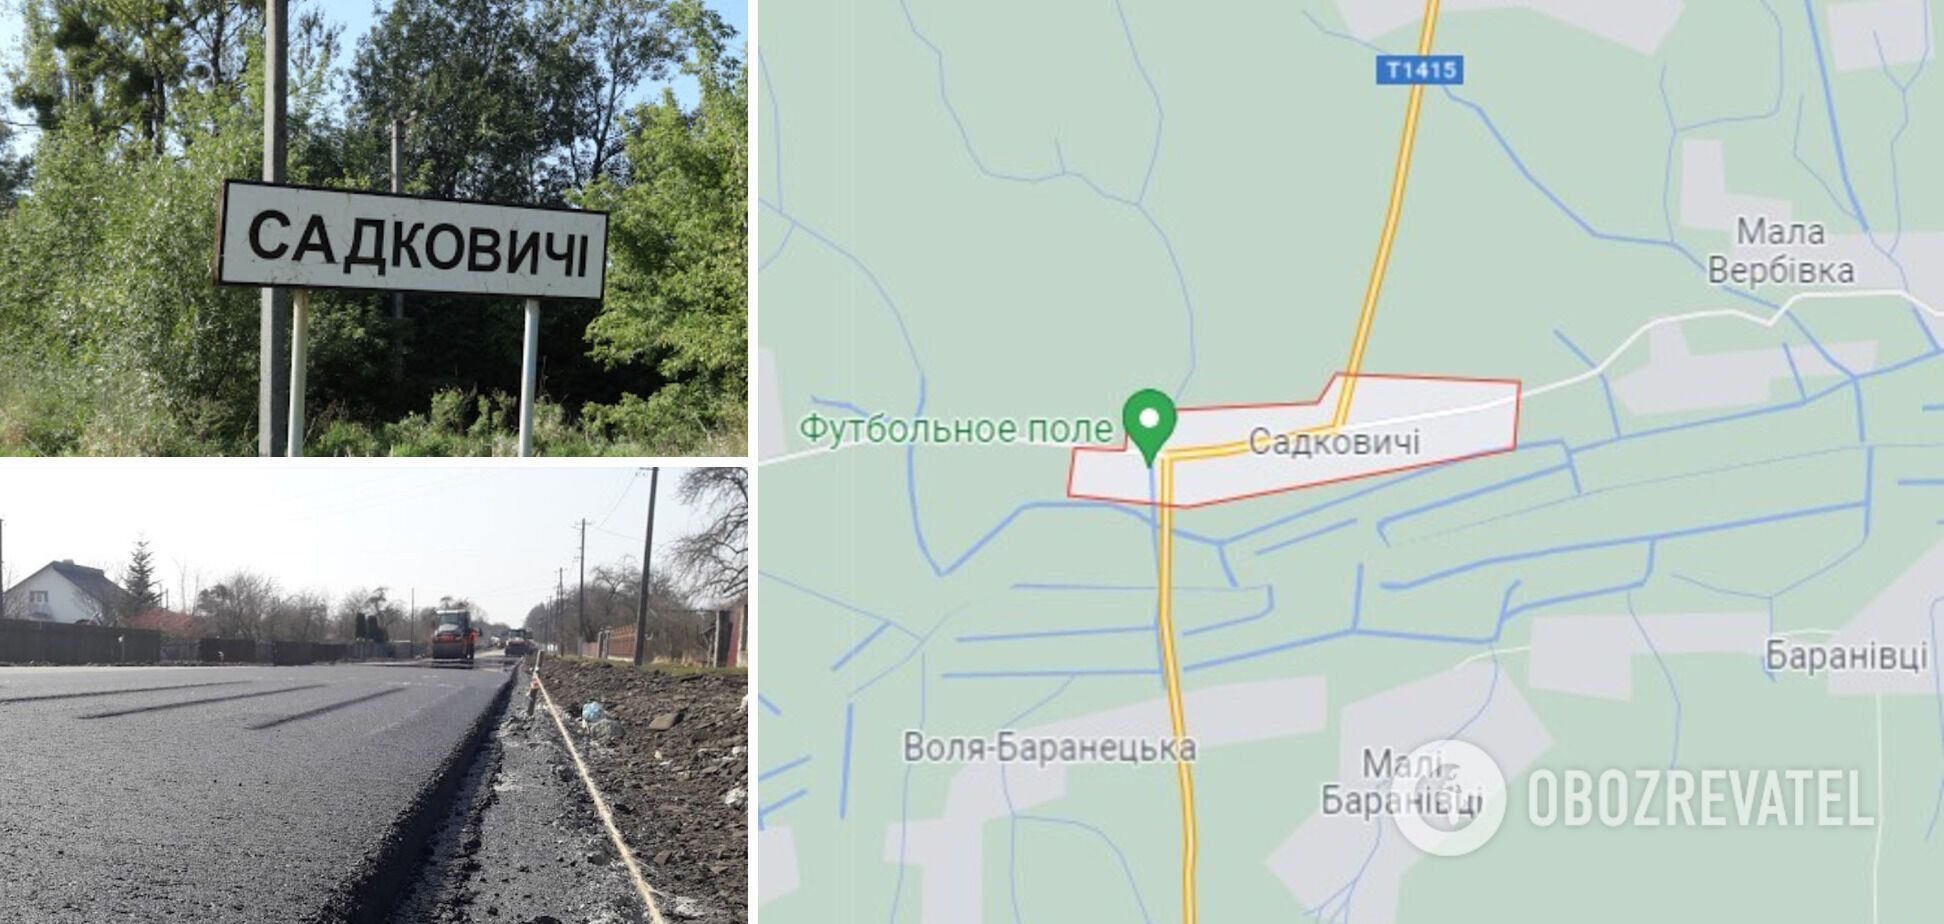 ДТП произошло в селе Садковичи Самборского района Львовщины